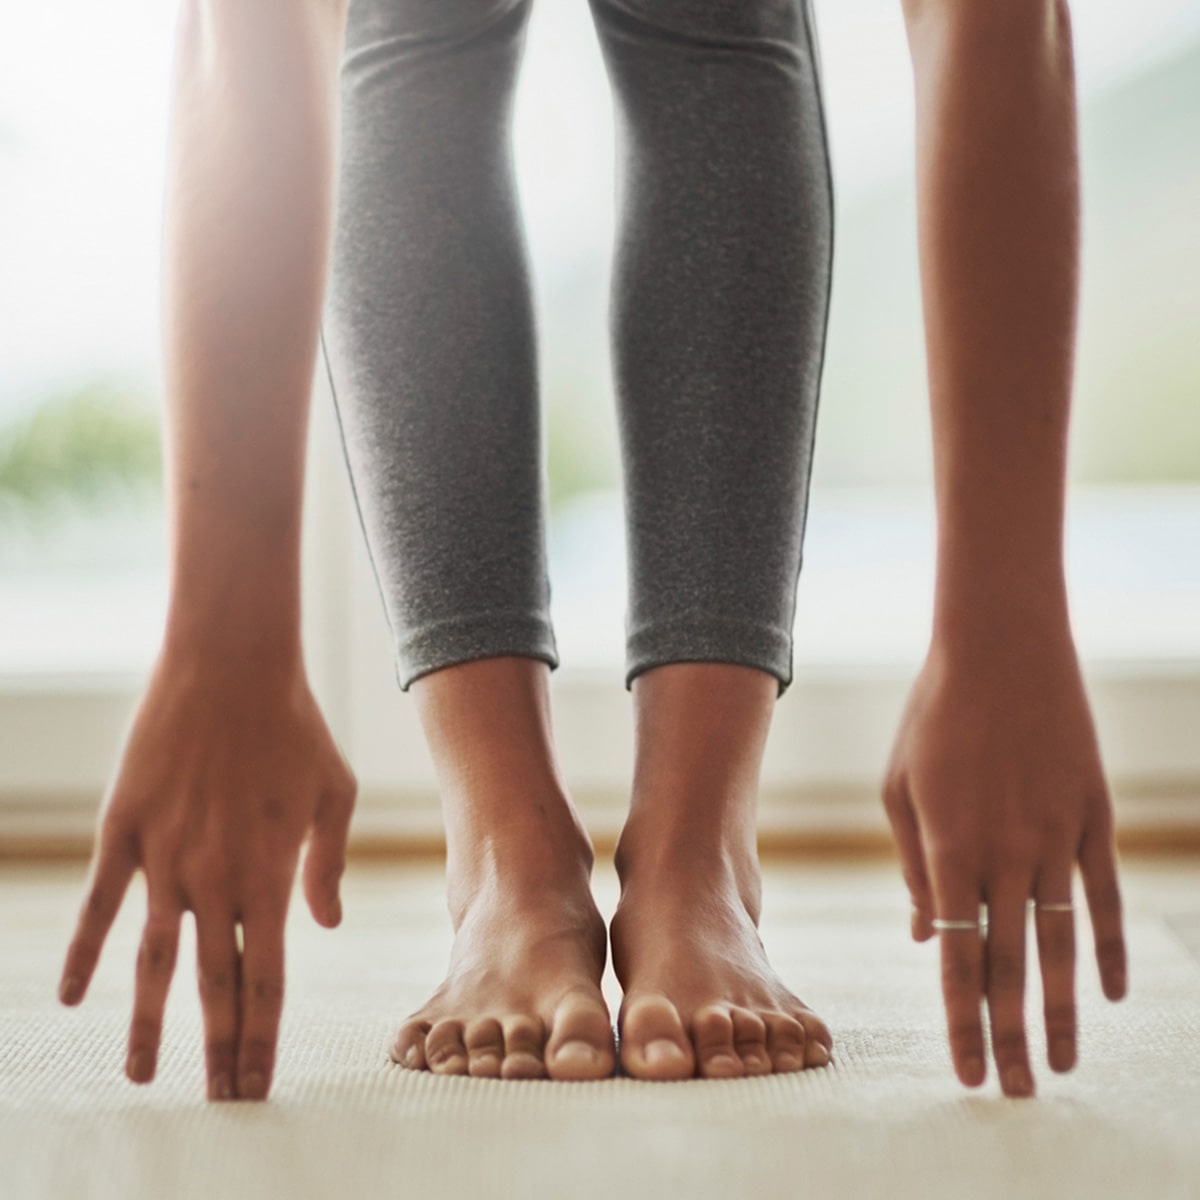 Junge Frau macht Dehnübungen. Ihre Fingerspitzen berühren den Boden, während ihre Beine gerade durchgestreckt sind und ihre Füße vollständig auf dem Boden stehen.